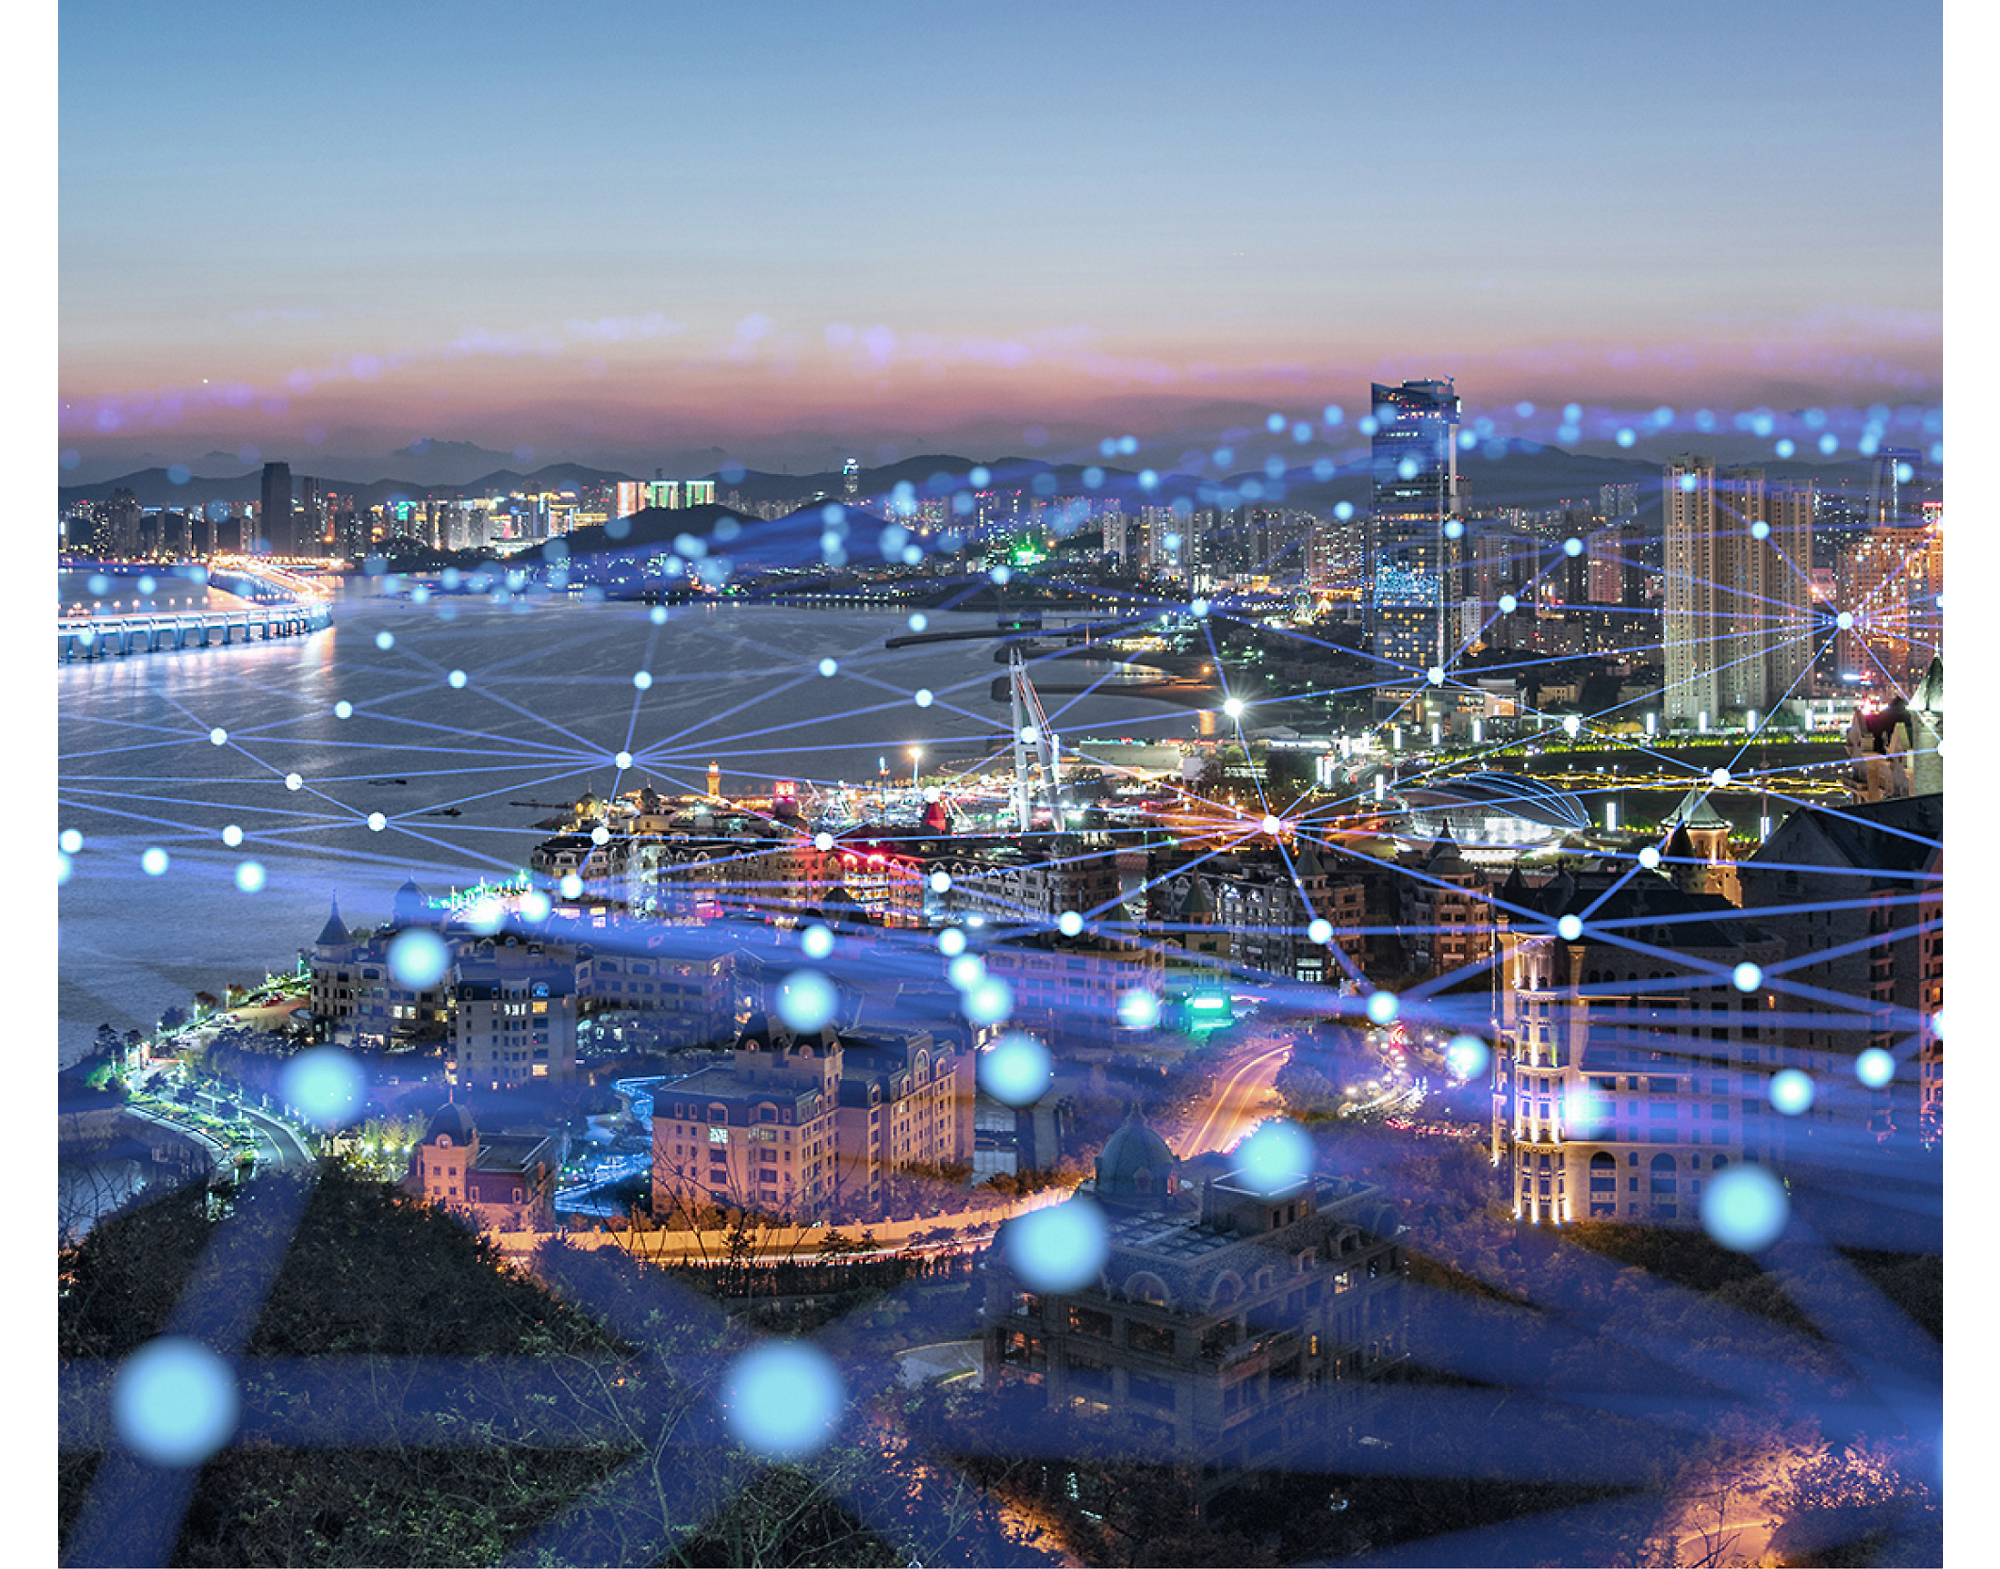 Egy tengerparti város képe madártávlatból alkonyatkor, kivilágított utcák és épületek, rajtuk ragyogó digitális hálózati rács.